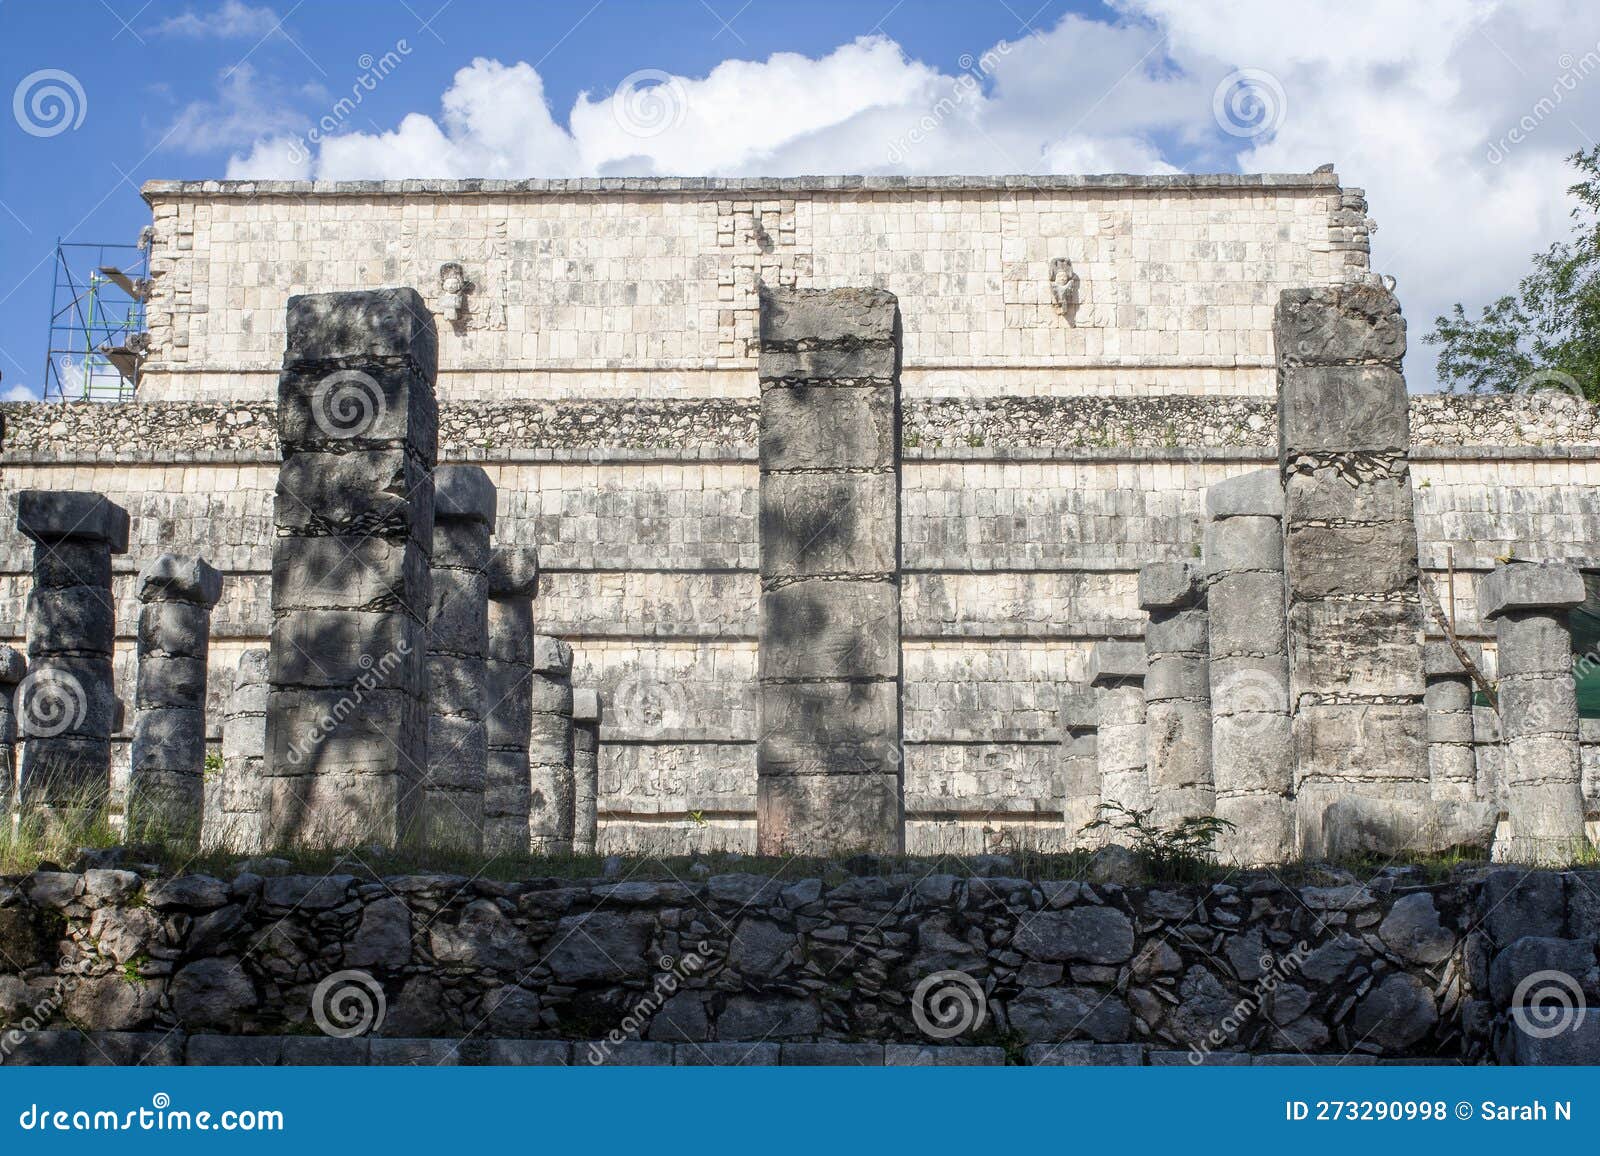 chichen itza ruins, grupo de la mil columnas, tinum, yucatan, mexico